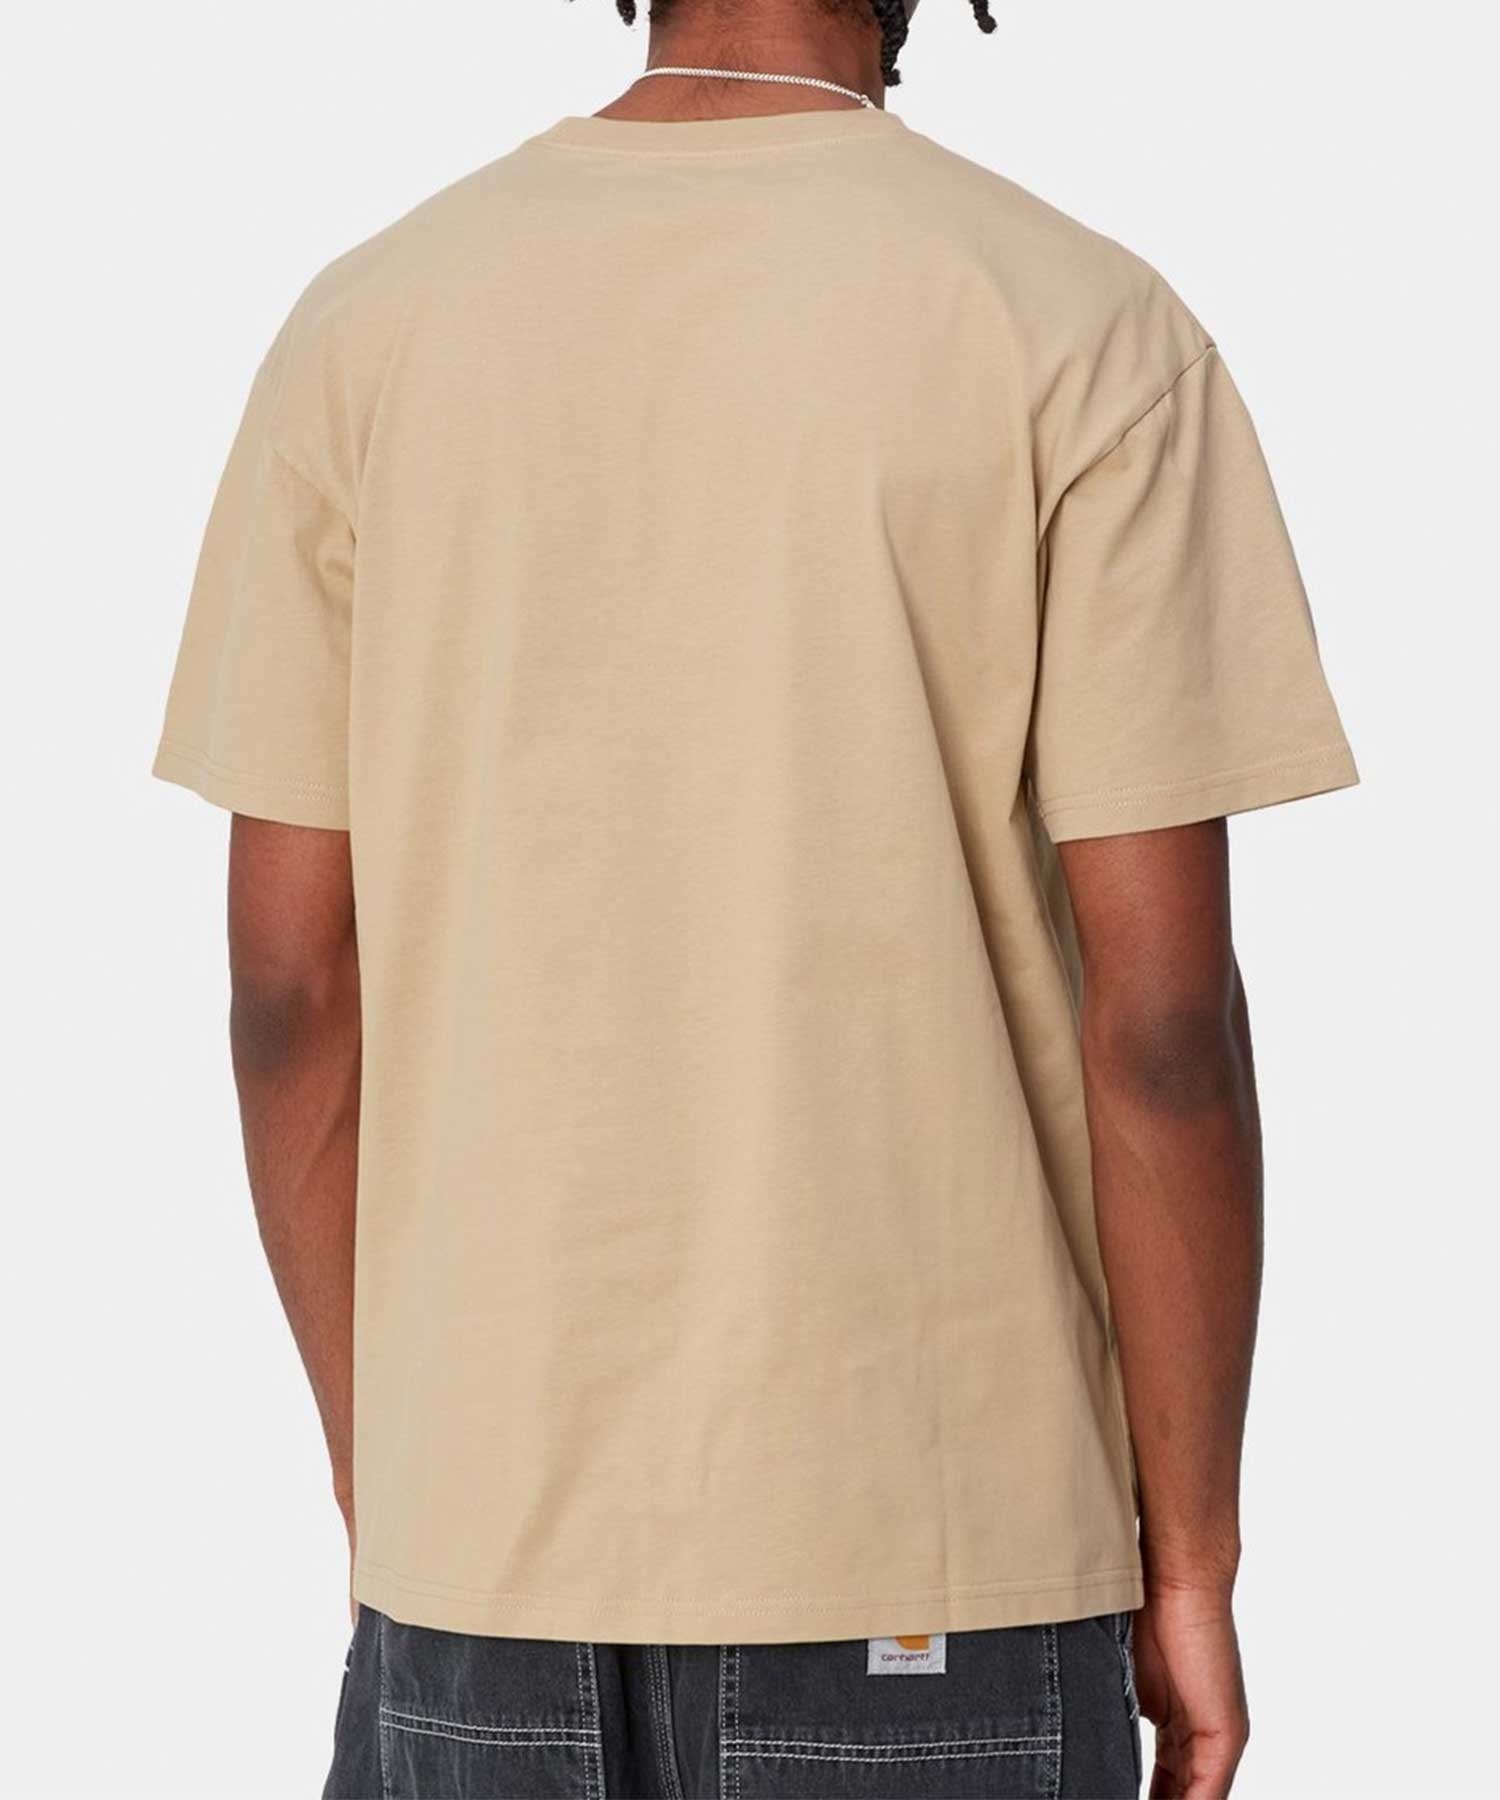 Carhartt カーハート S S CHASE T-SHIRT ルーズシルエット メンズ 半袖 Tシャツ I026391 SAGD(SA/GD-M)